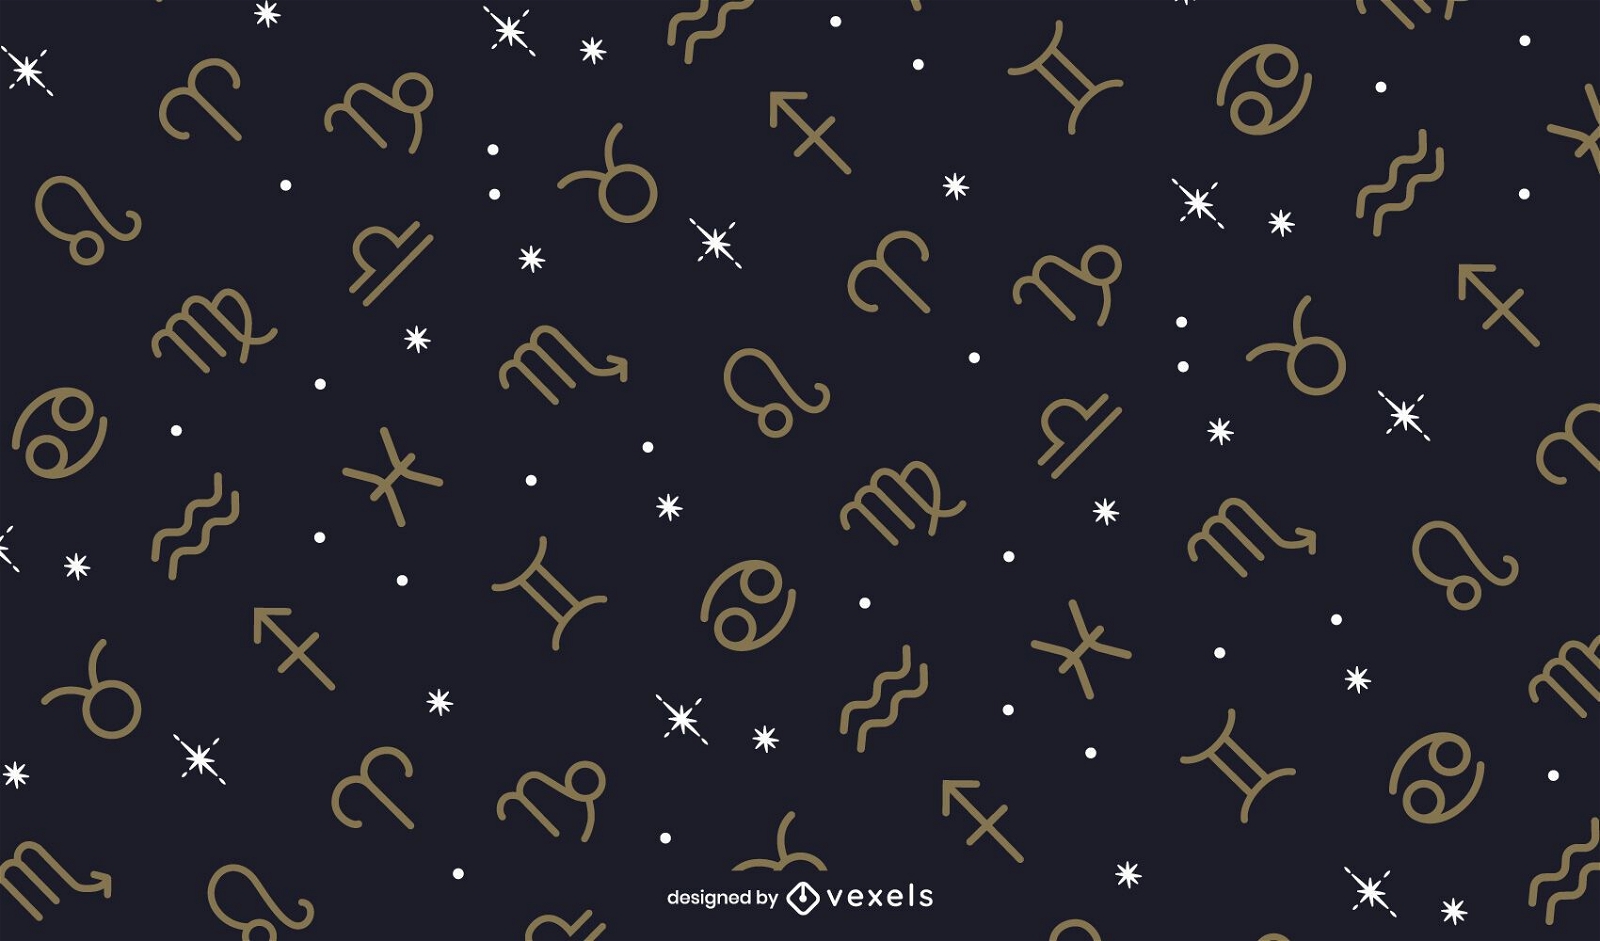 Projeto do padrão dos signos do zodíaco